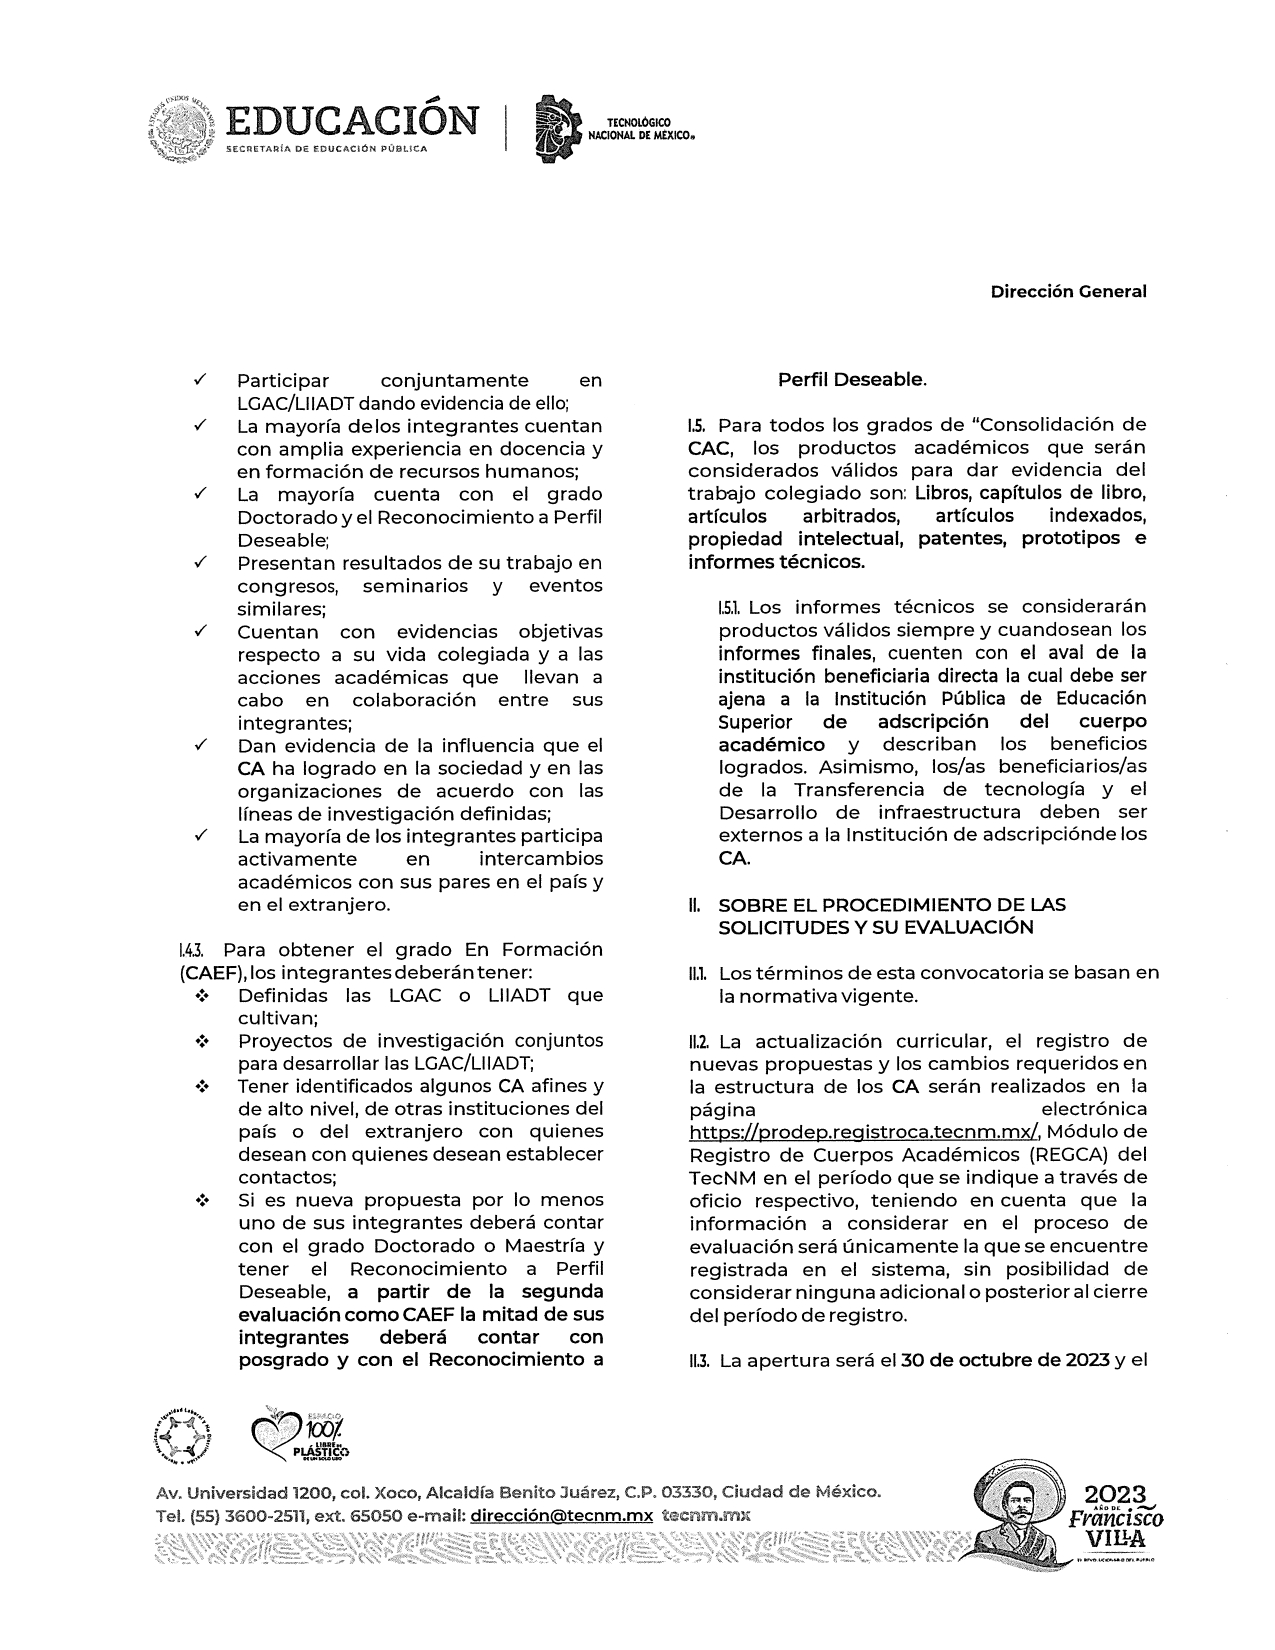 Registro_y_Evaluación_de_Cuerpos_Académicos_2023_page-0004.jpg